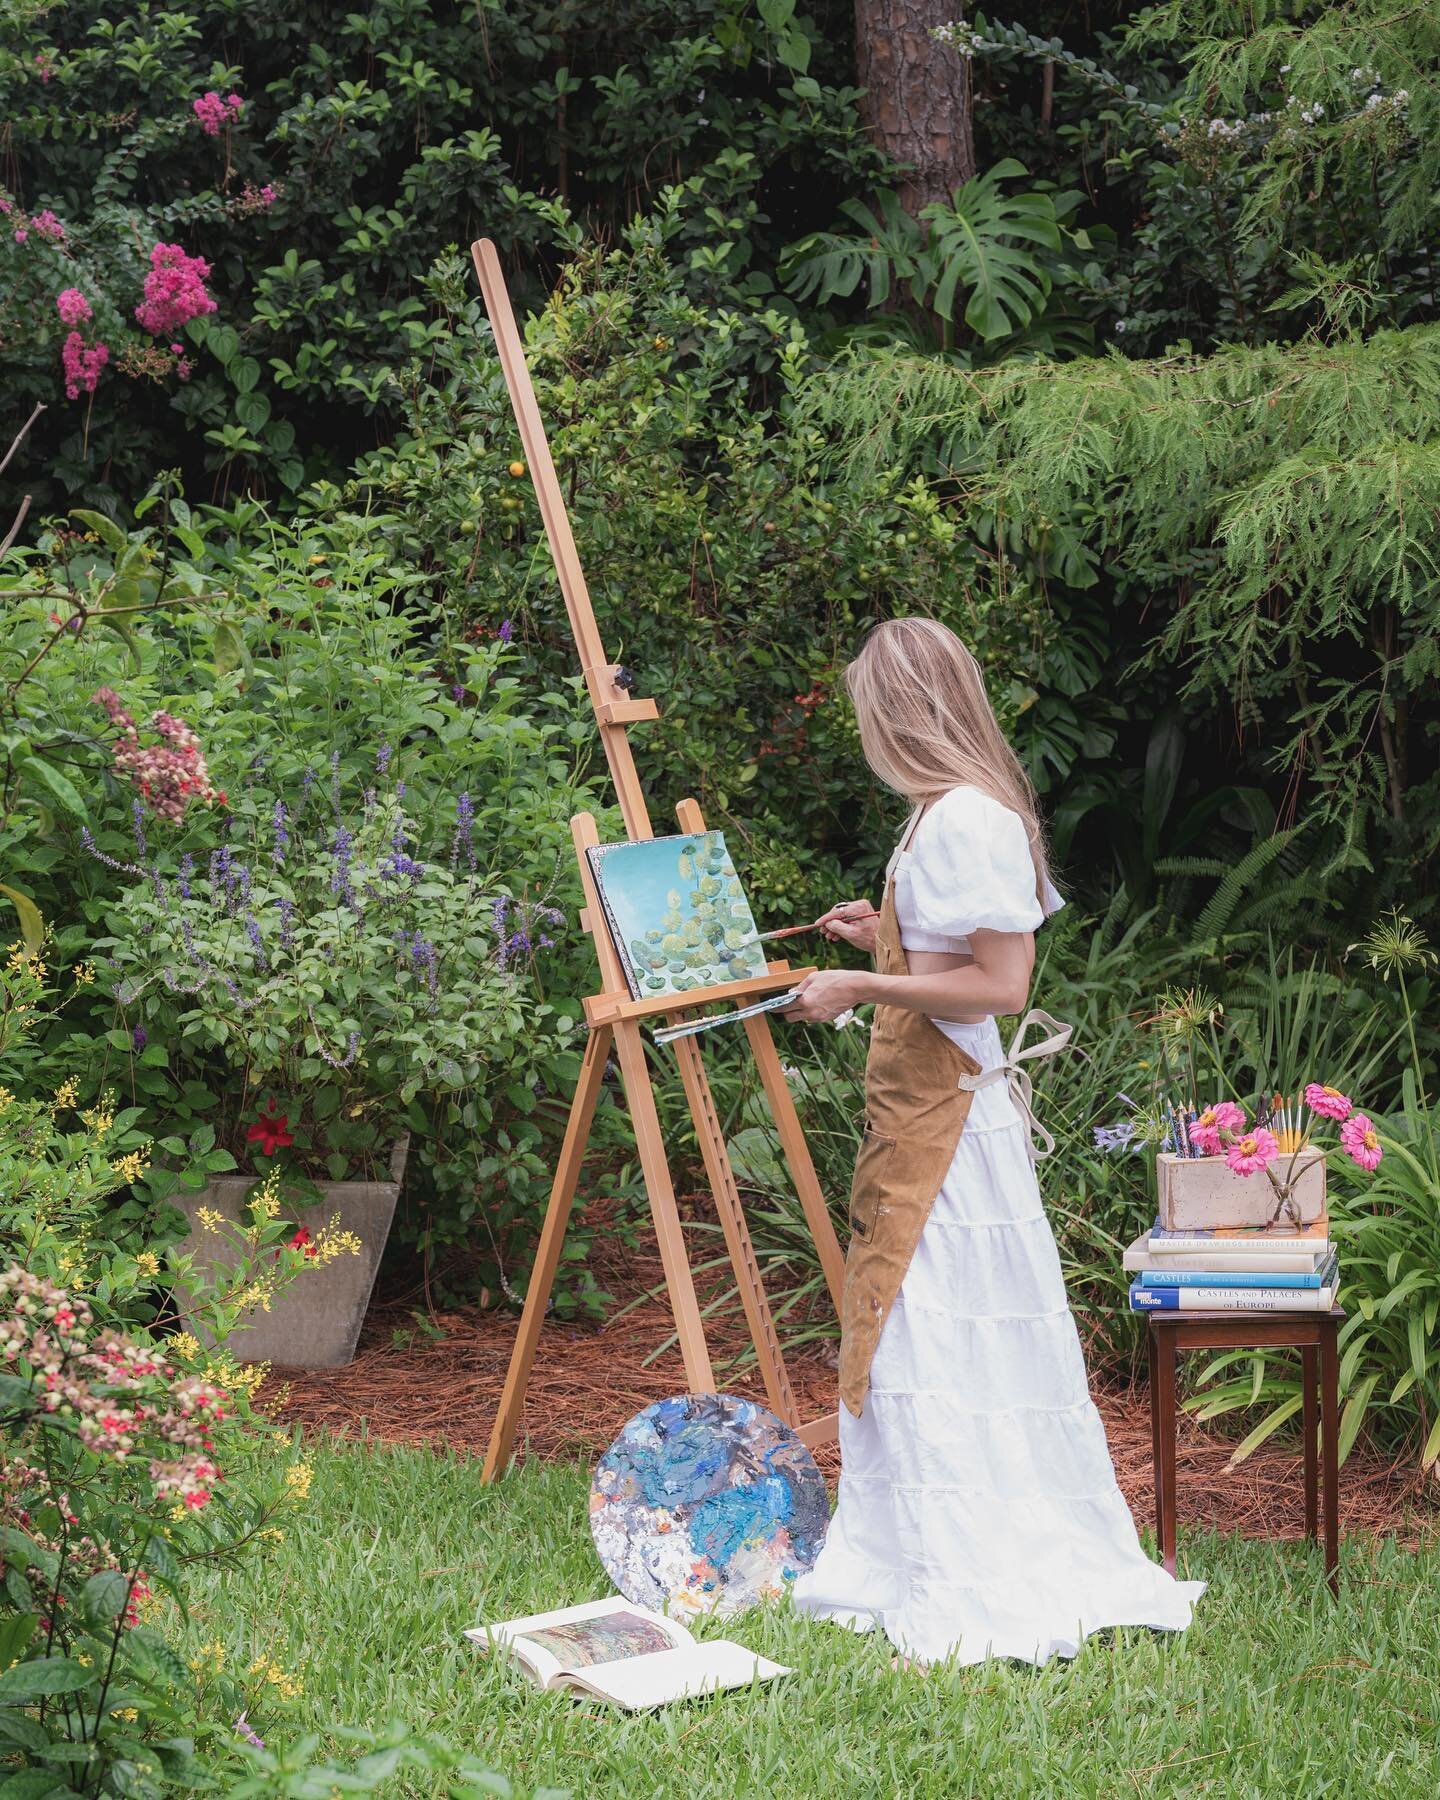 &ldquo;In Her Element&rdquo; by @malloryforrest #ariellechristineart #originalart #enpleinair #painting #waterpainter #gardeniagirlsmagicalgarden